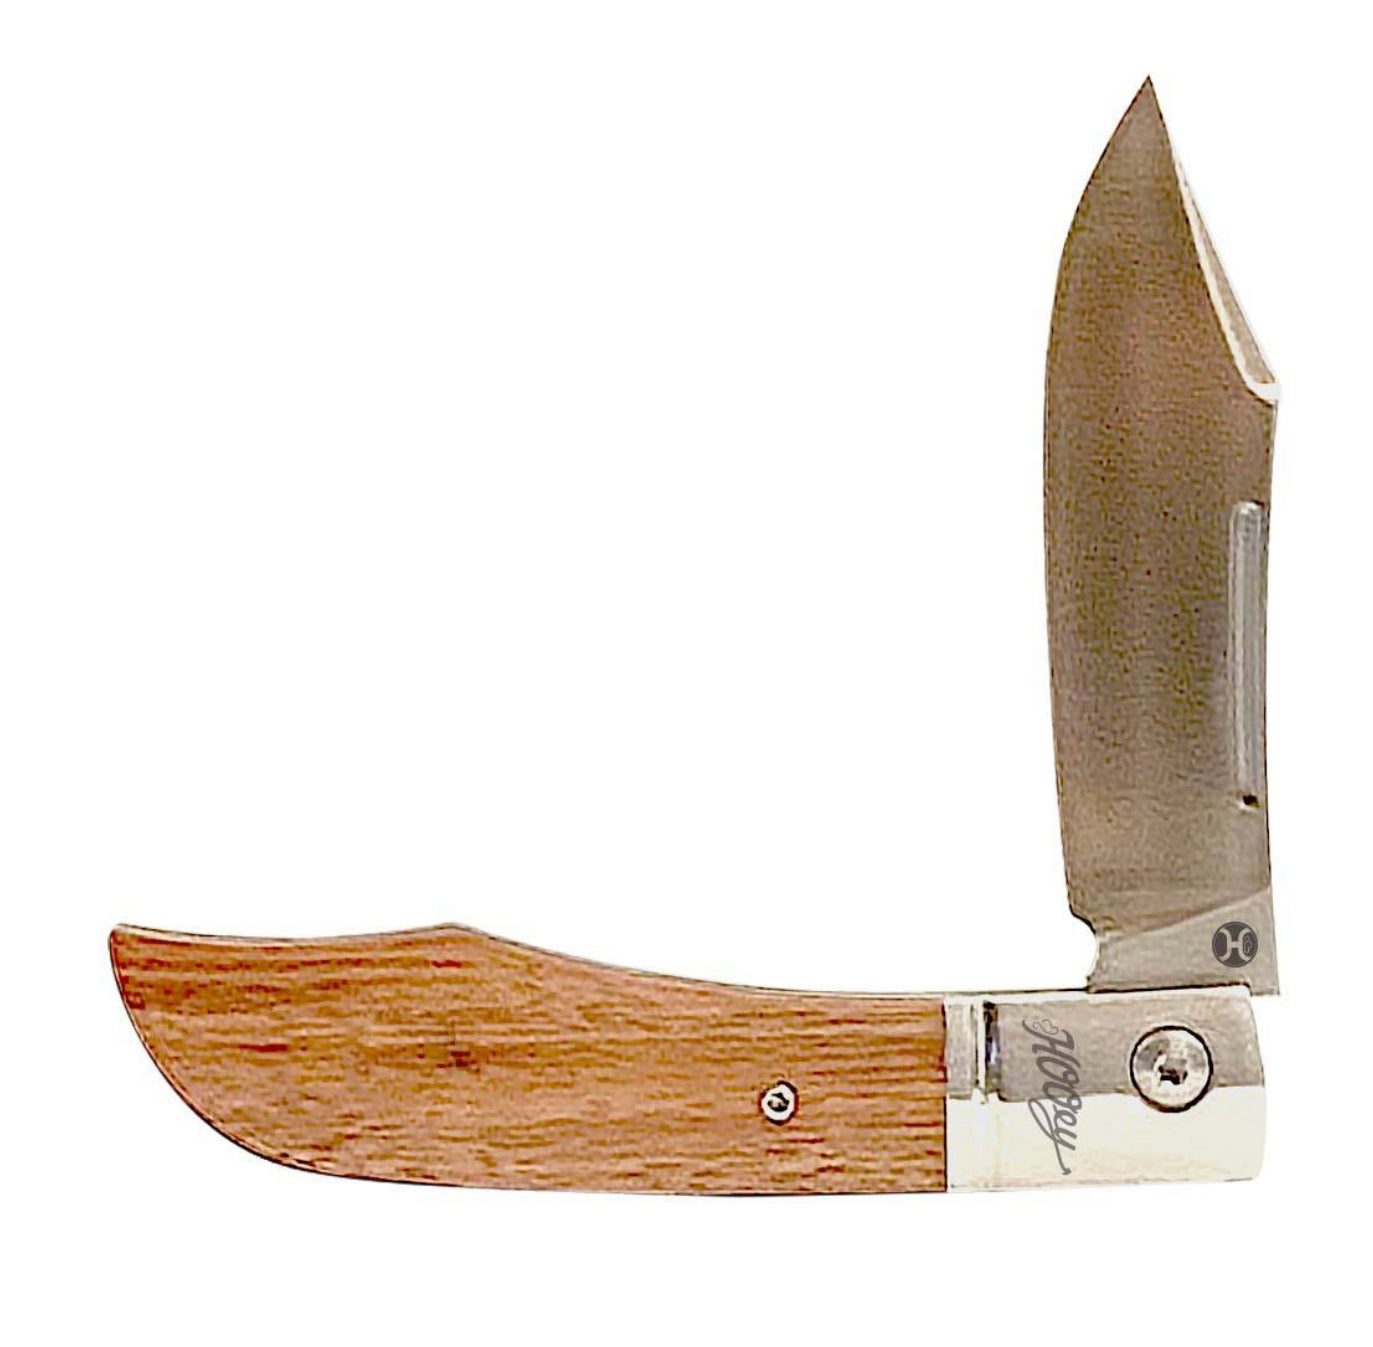 HOOEY KNIFE, DYED BURLWOOD 3” BLADE WITH 4” HANDLE